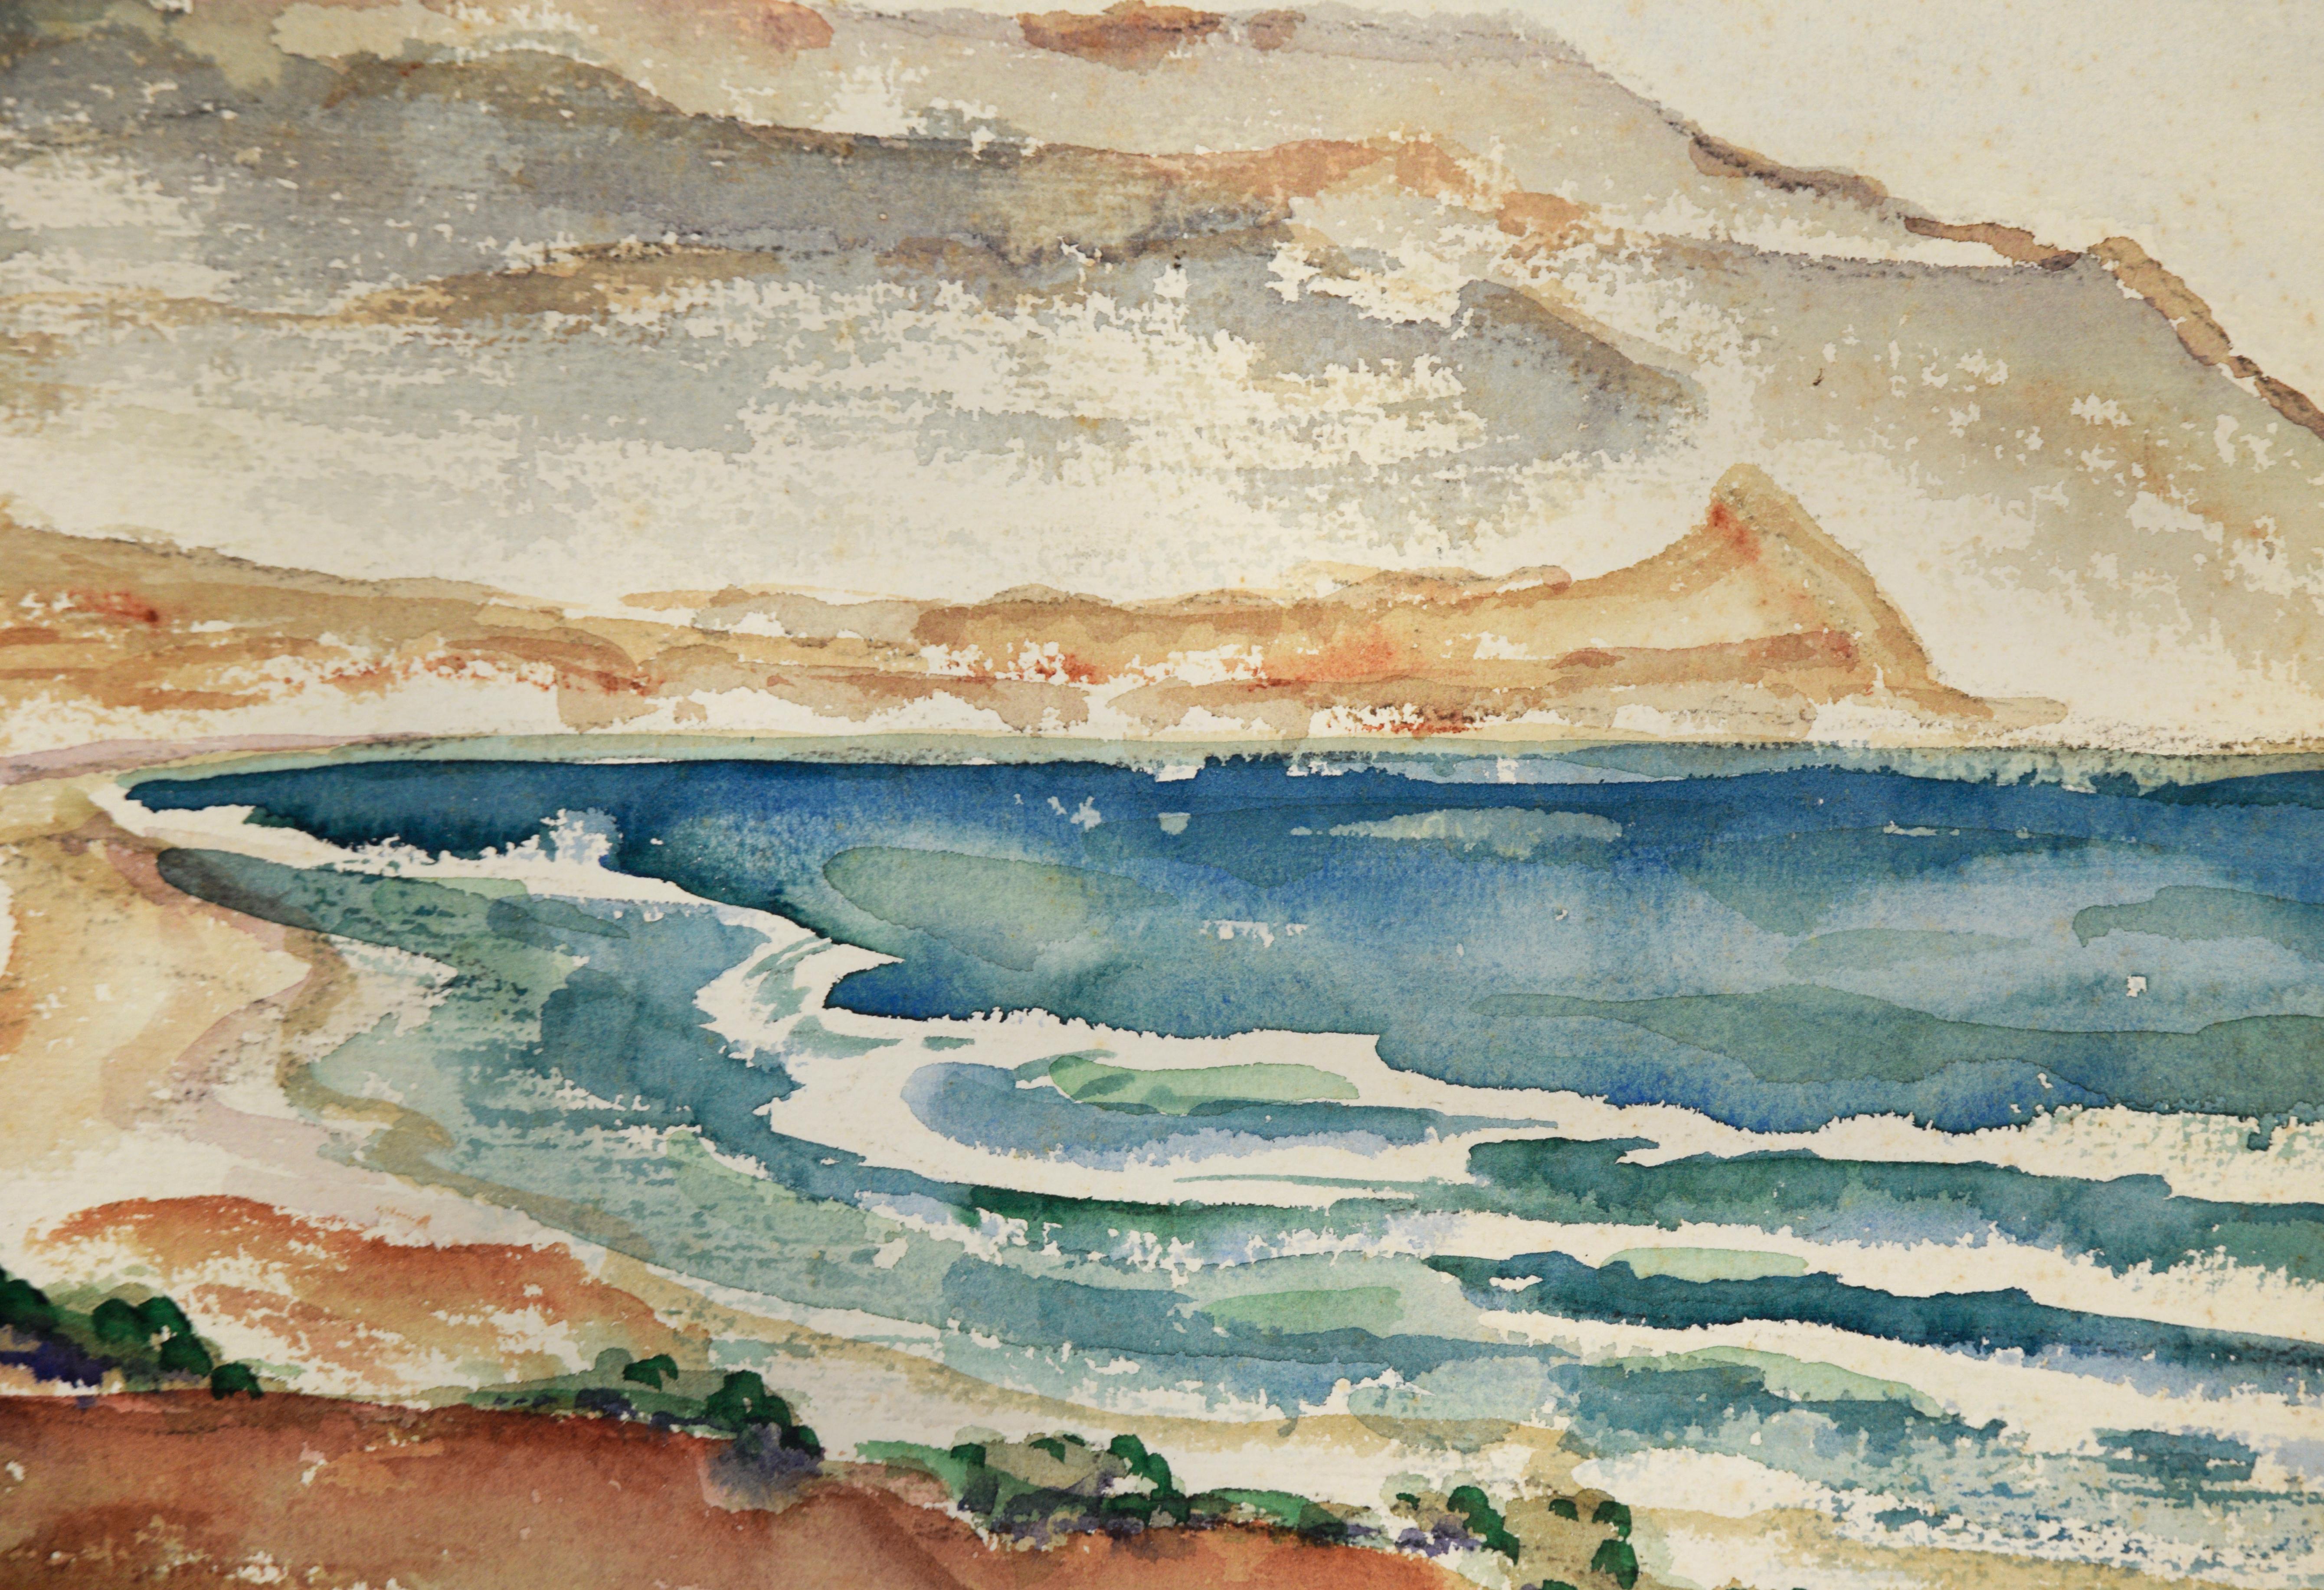 Hermosa Beach Küstenlinie - Aquarell auf Papier (Amerikanischer Impressionismus), Painting, von FJ Whitlock